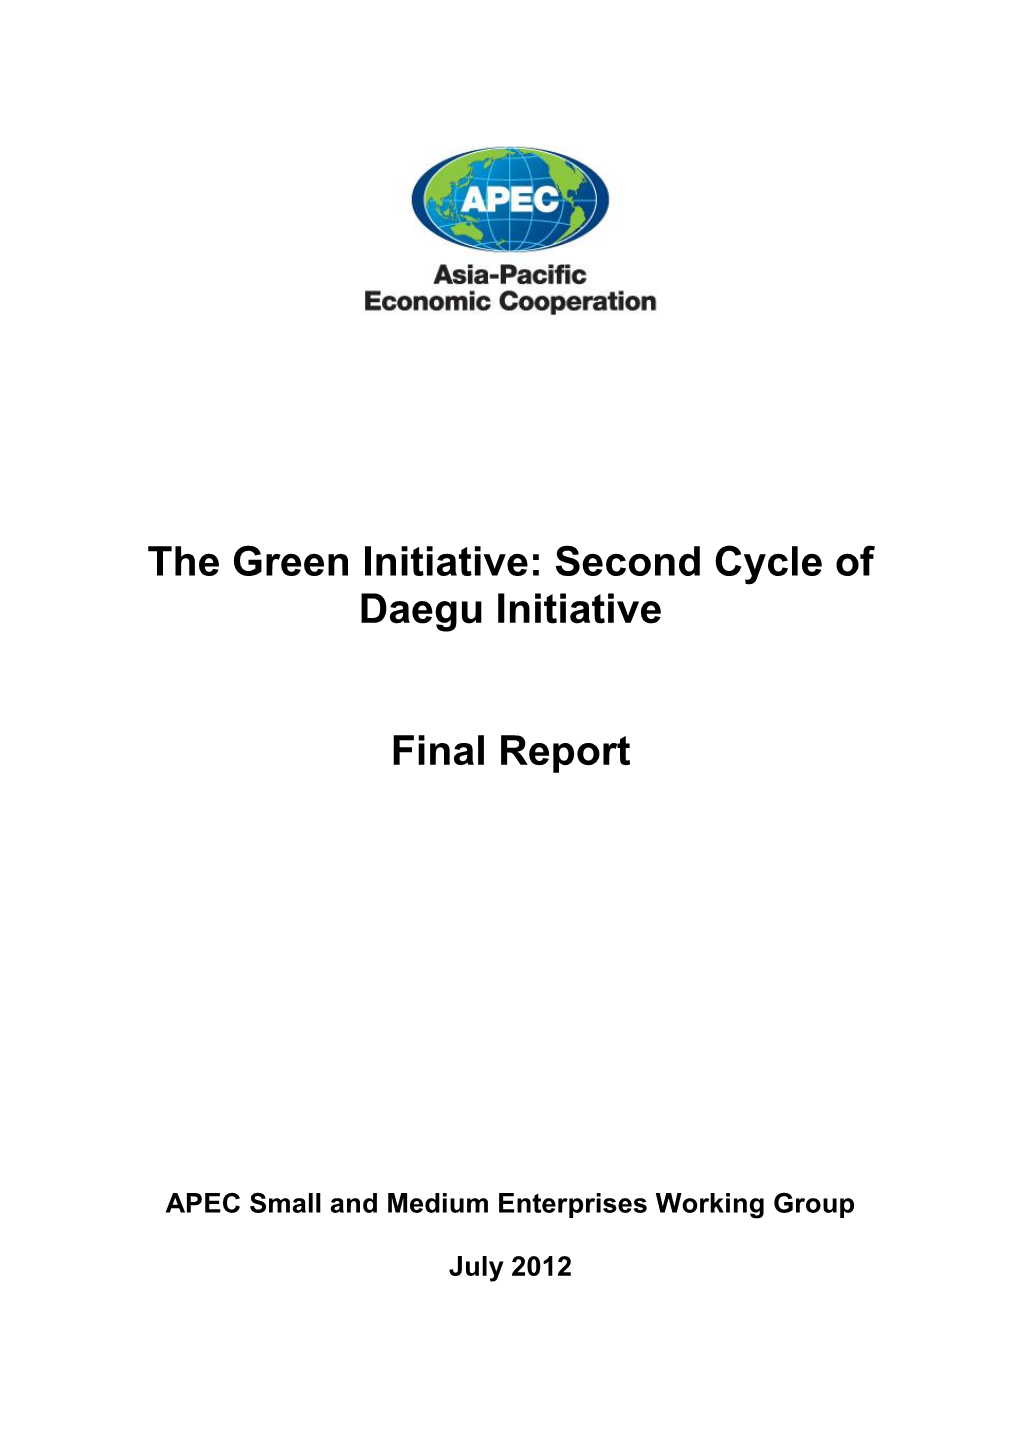 The Green Initiative: Second Cycle of Daegu Initiative Final Report